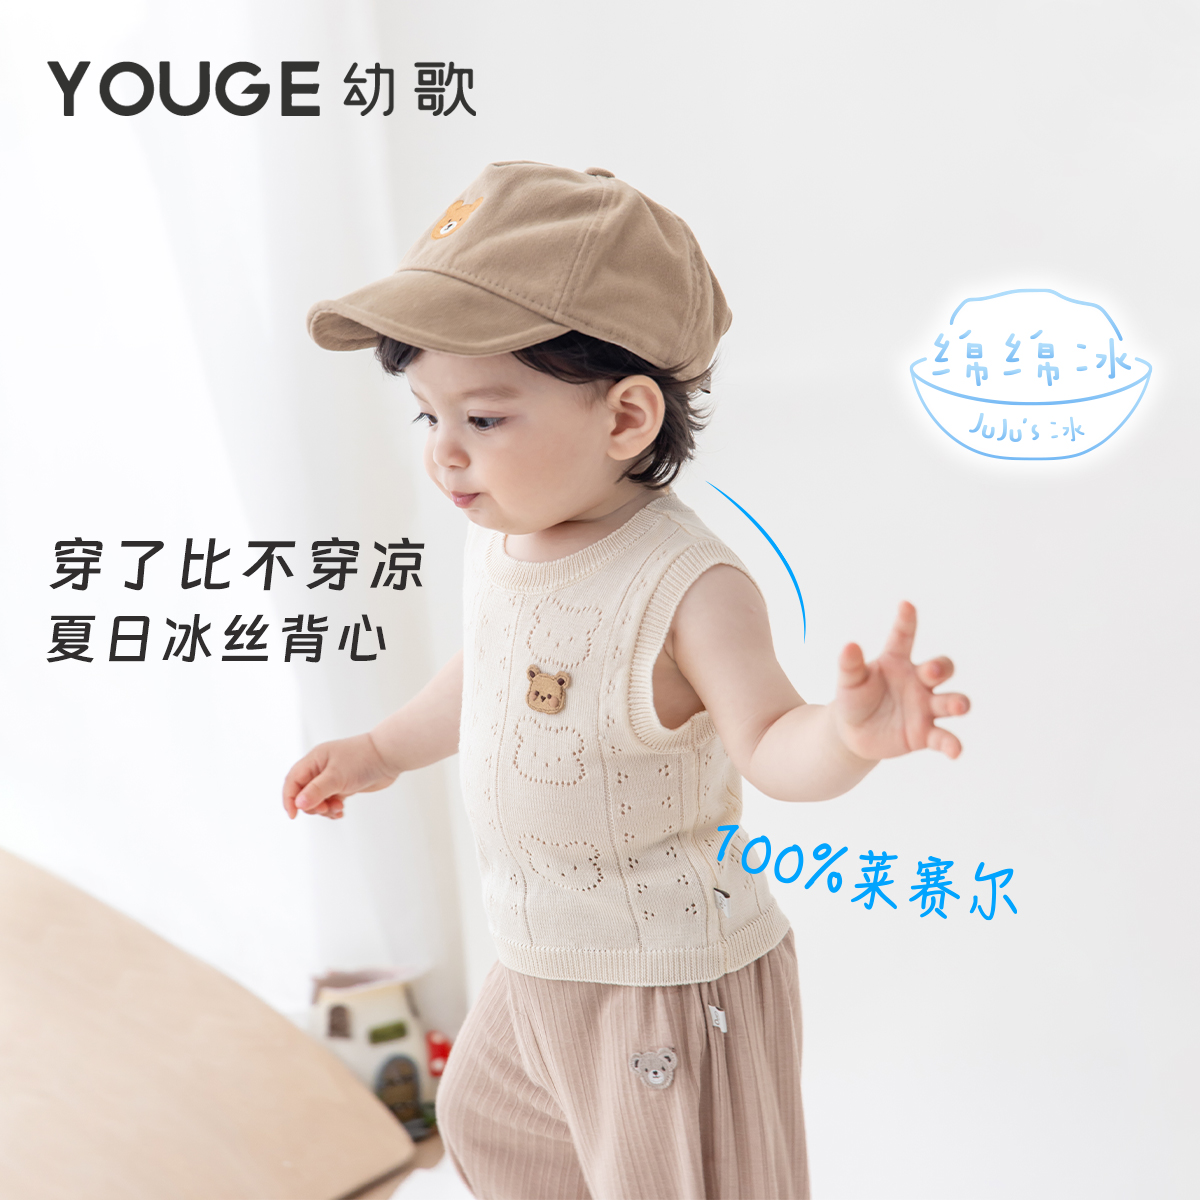 YOUGE幼歌儿童甜美镂空冰丝背心T恤婴儿夏季可爱童趣凉感透气上衣